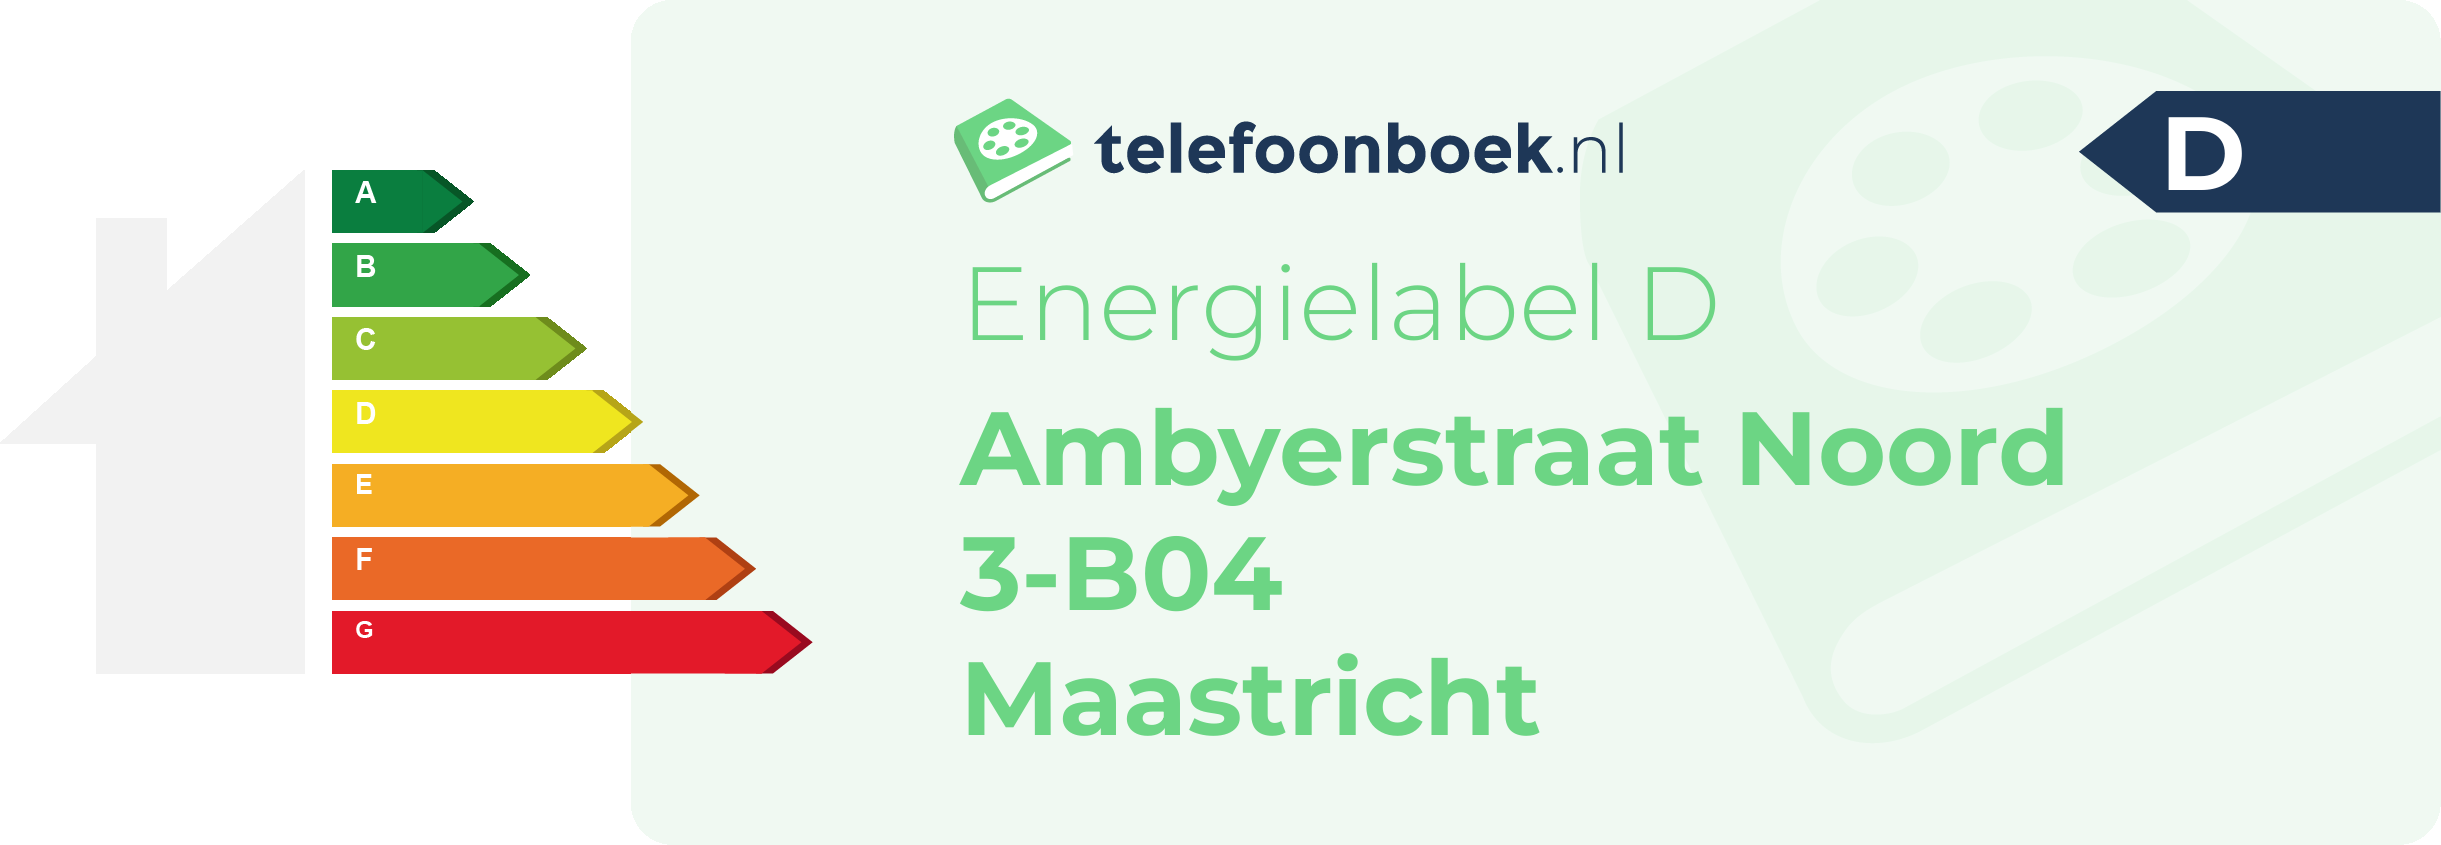 Energielabel Ambyerstraat Noord 3-B04 Maastricht